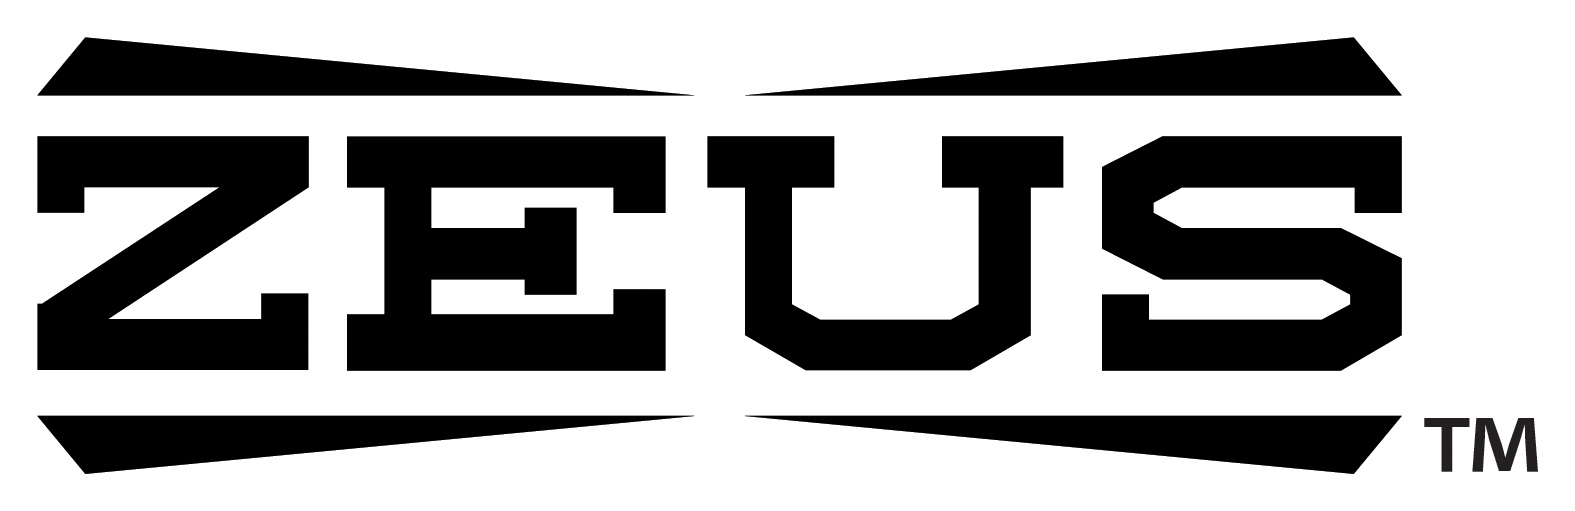 Zeus logo